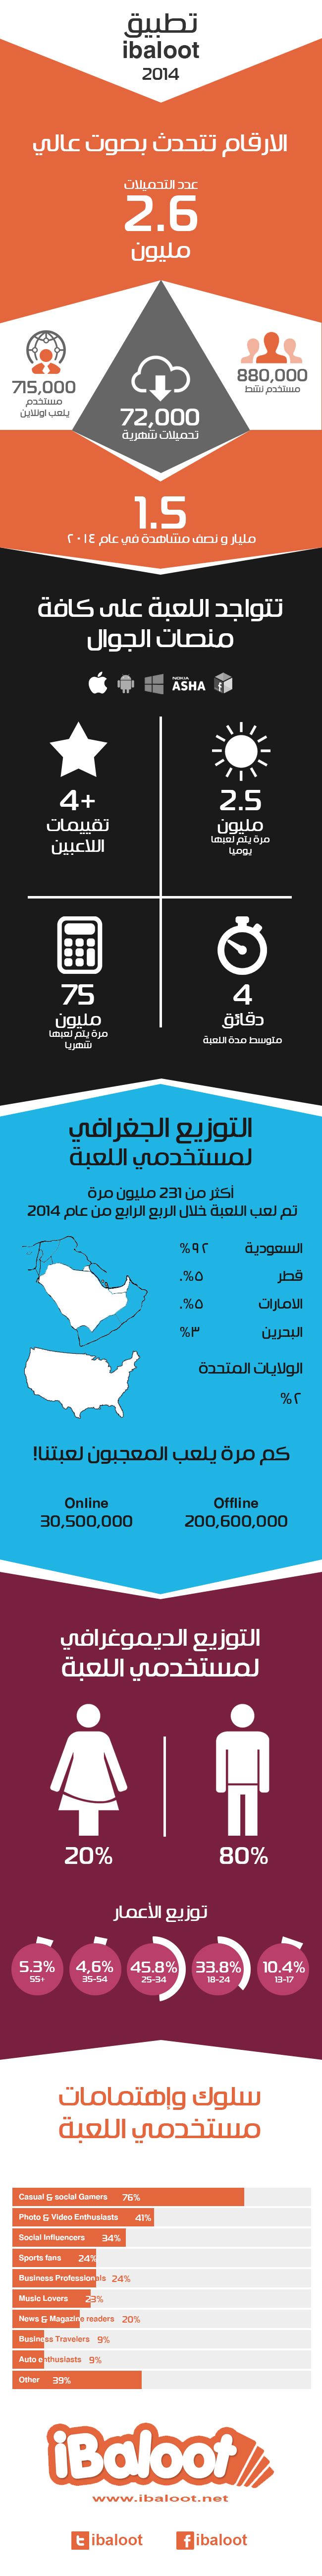 ibaloot-infographic-2014 (2)